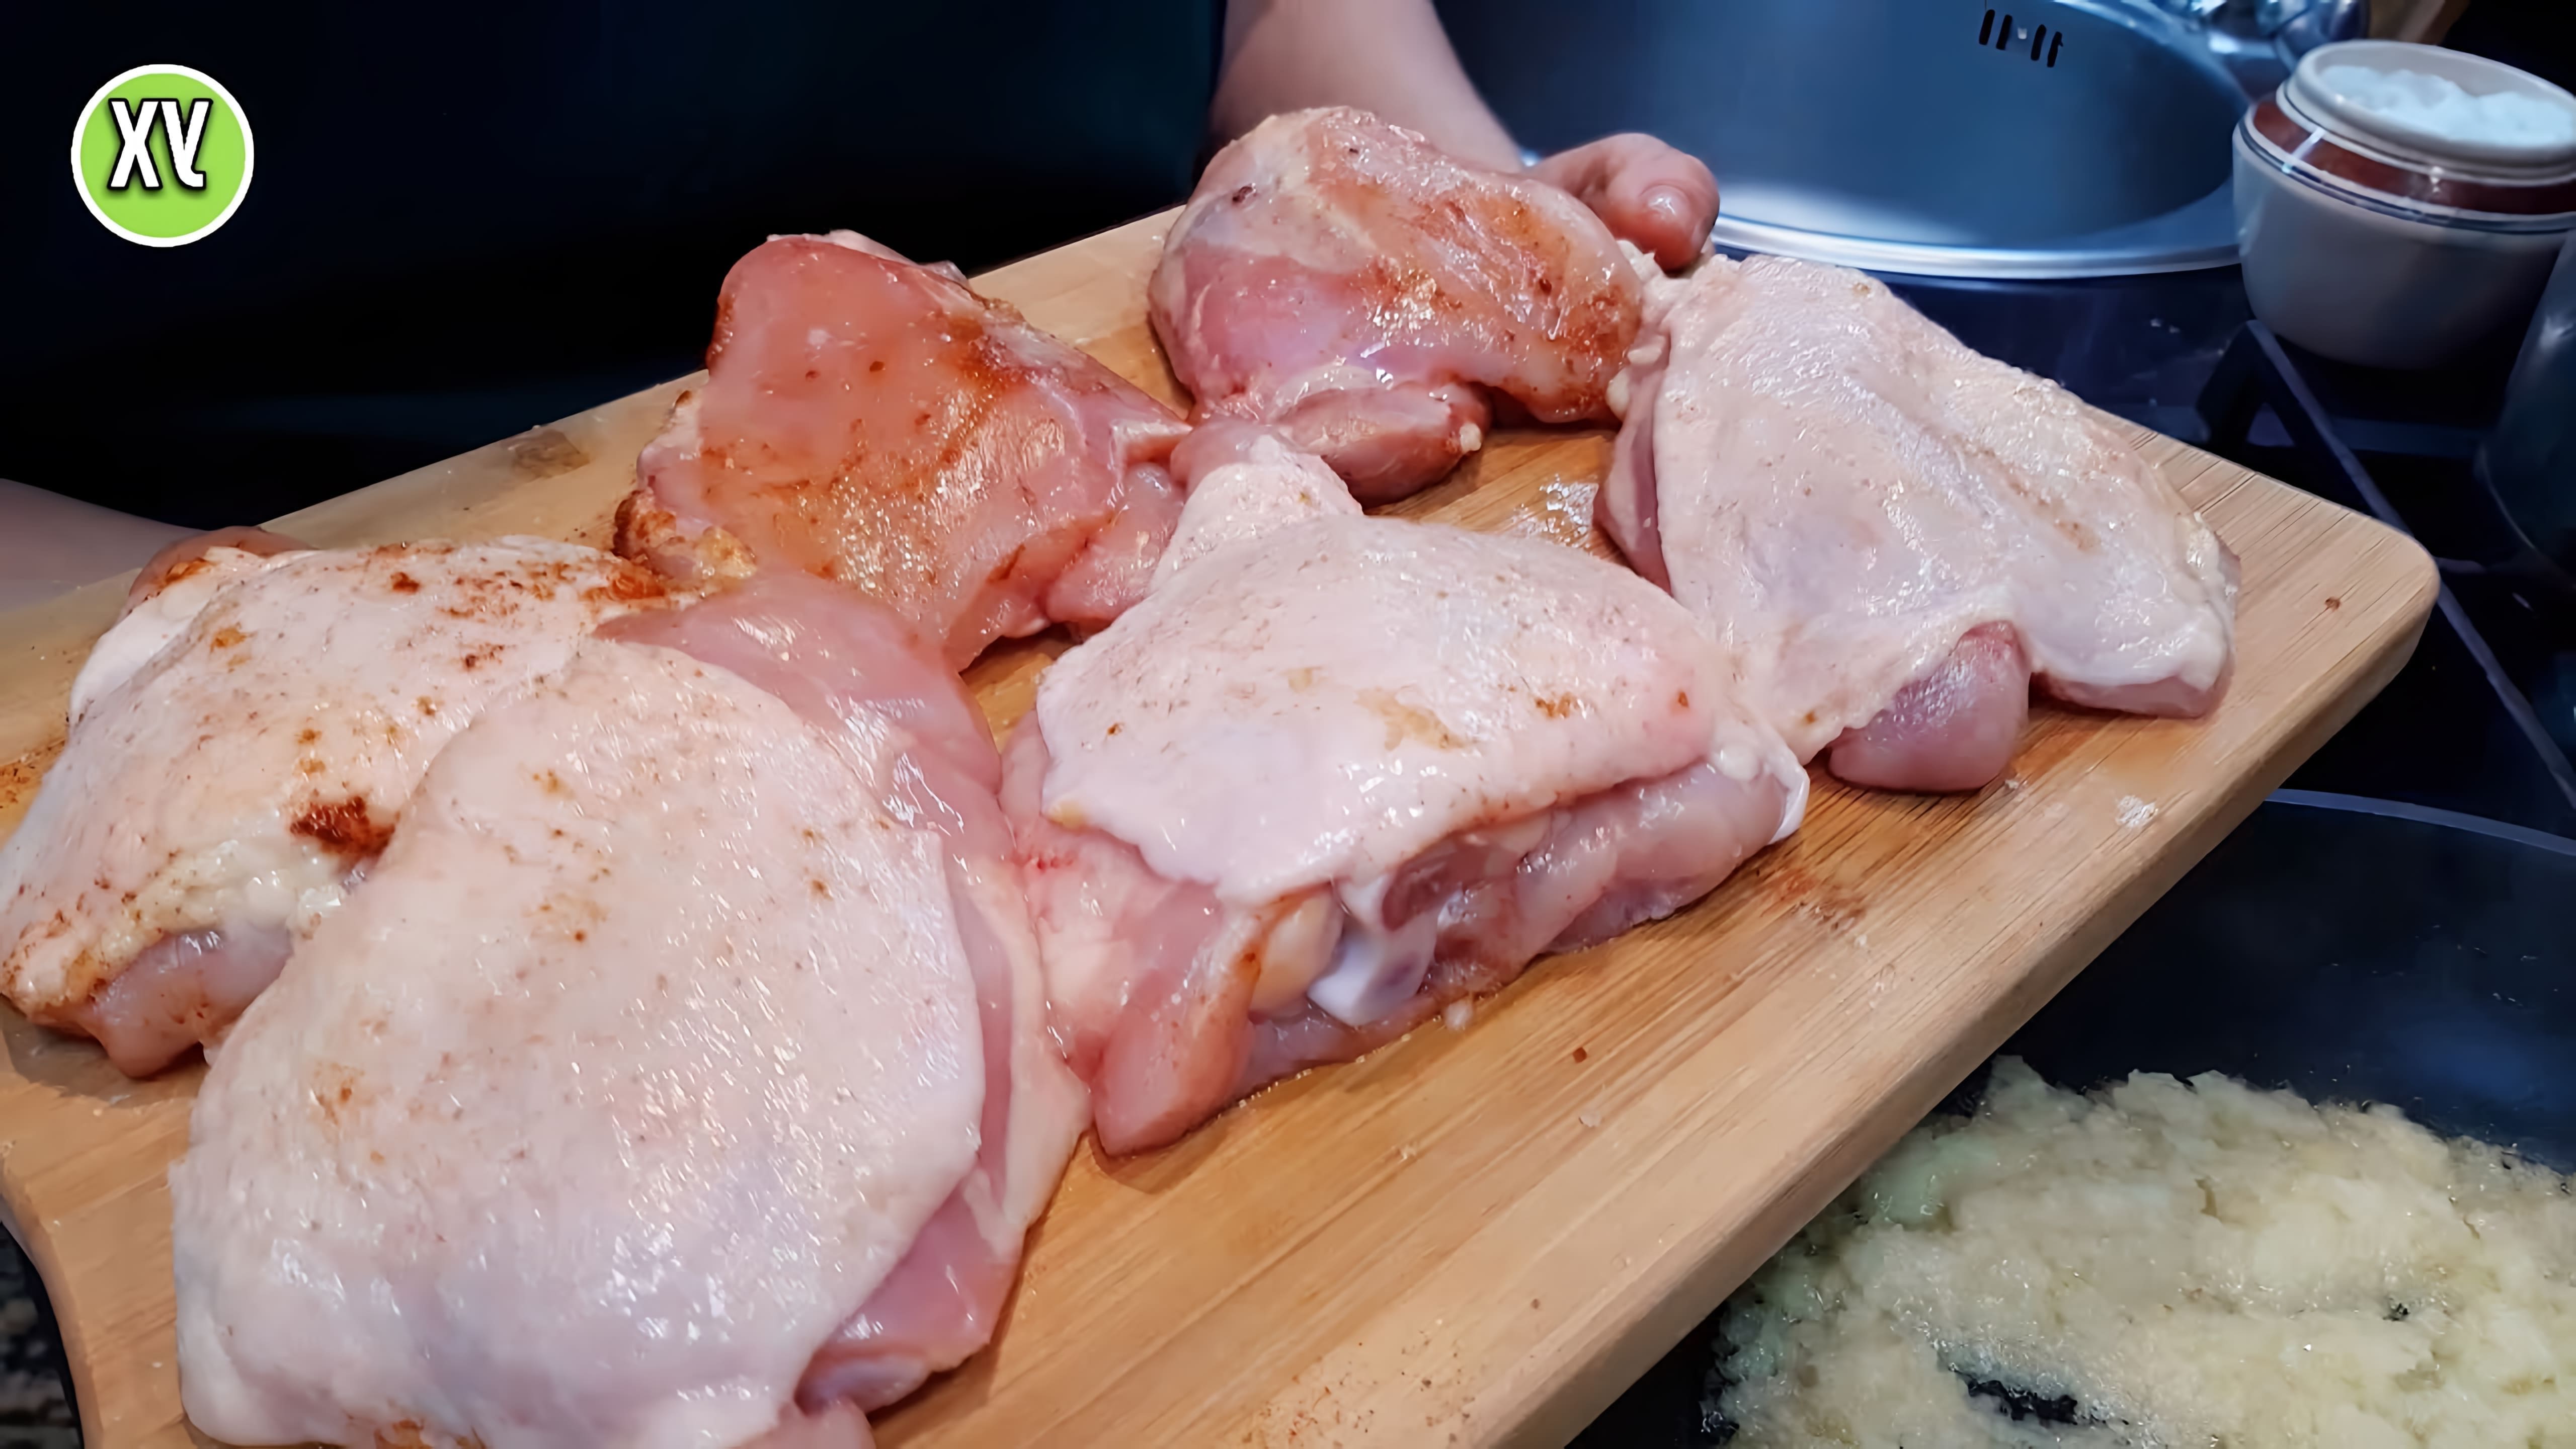 В этом видео демонстрируется процесс приготовления курицы на второе с картофельным пюре в качестве гарнира